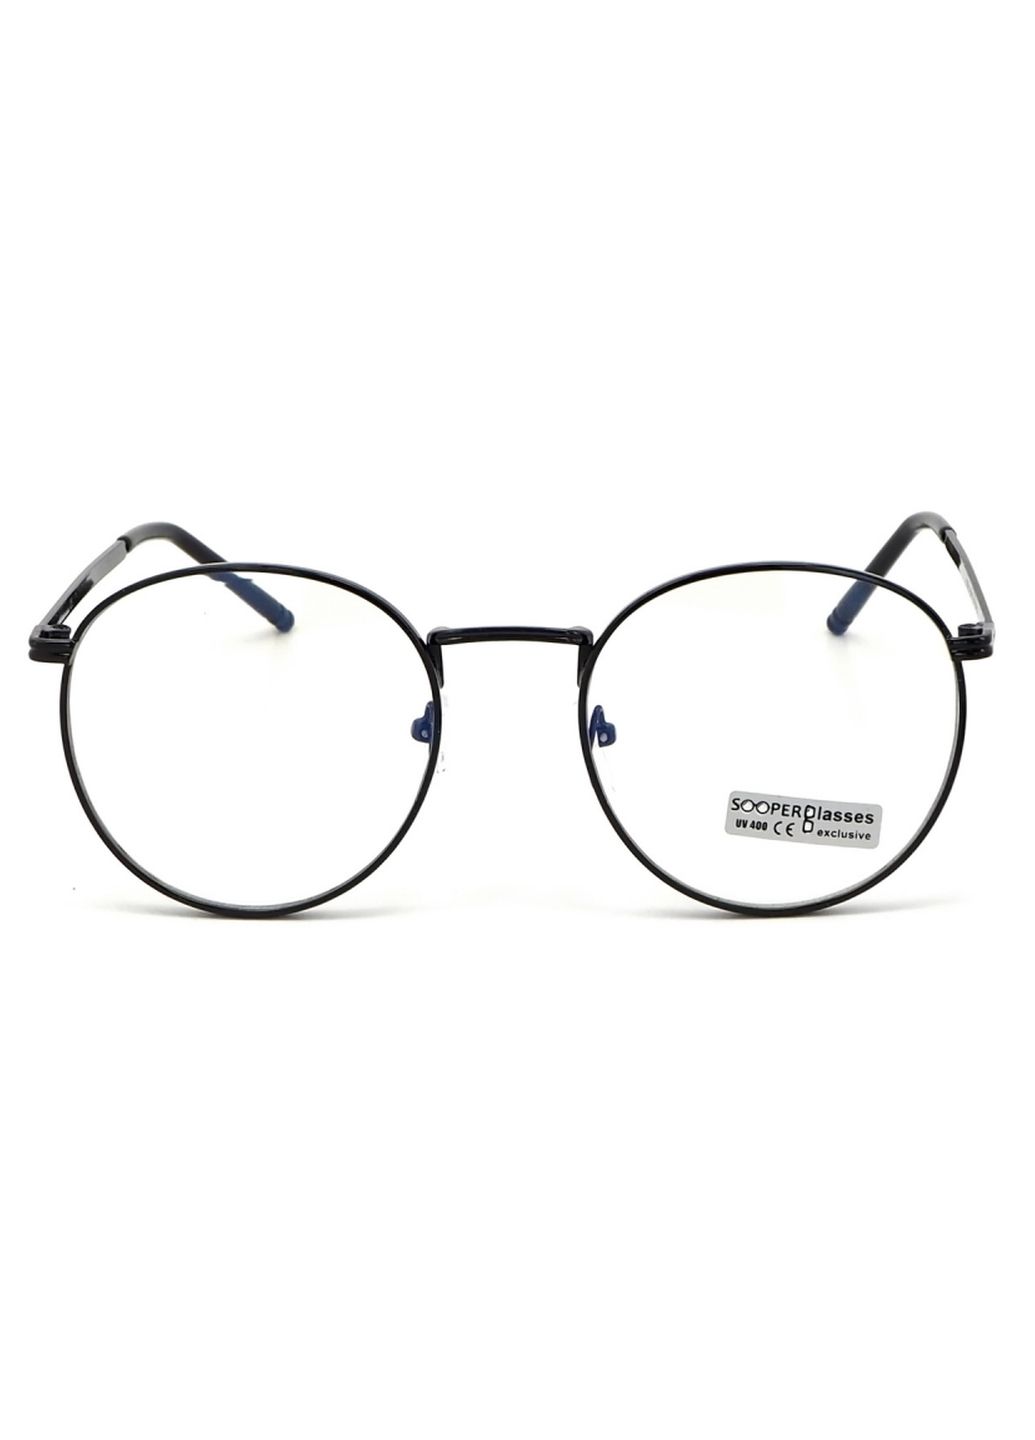 Купить Очки для работы за компьютером Cooper Glasses в черной оправе 124001 в интернет-магазине